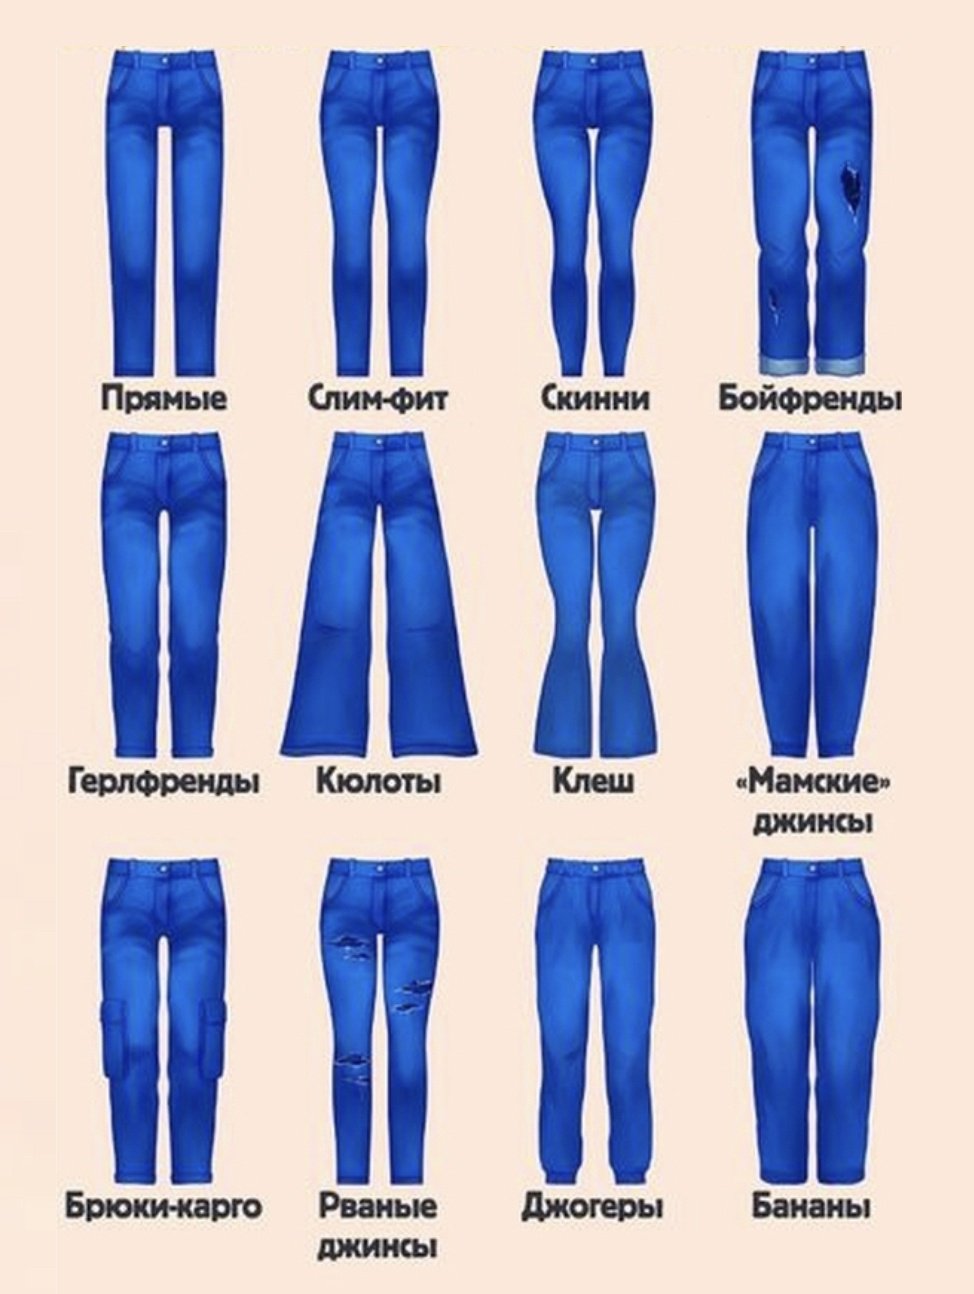 Формы джинсов